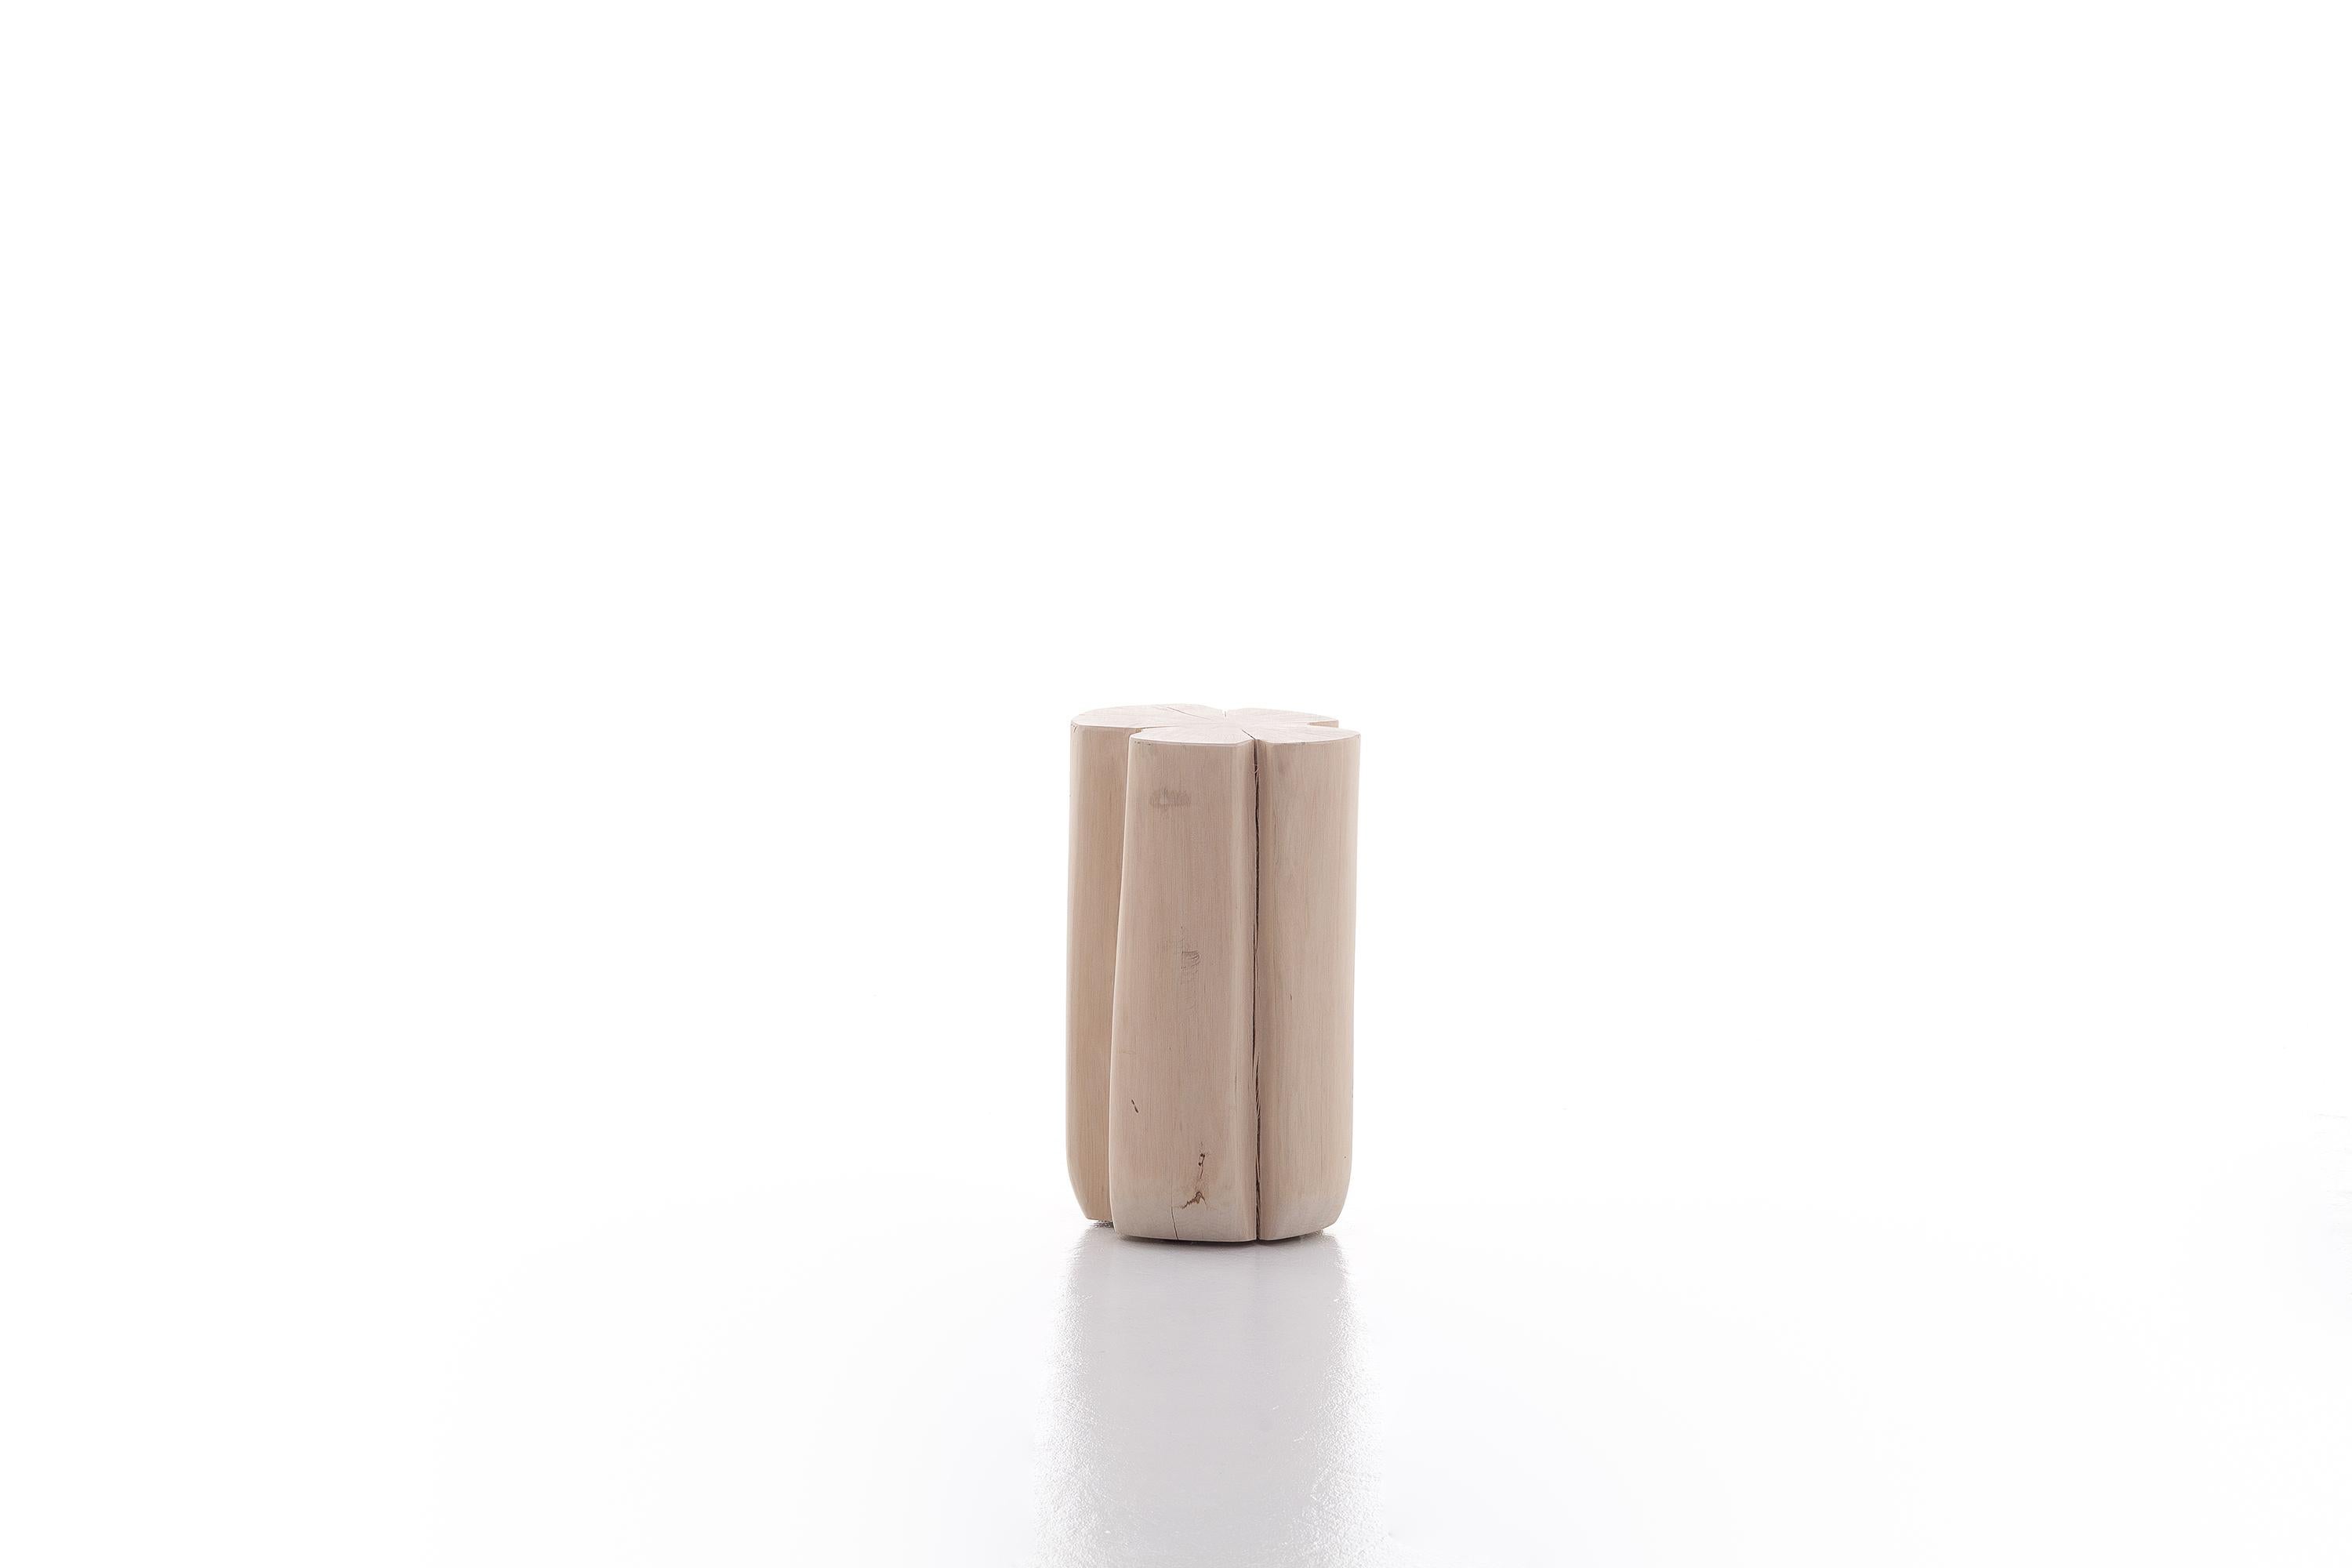 Una famiglia di pouf dalle suggestioni nordiche, Brick XS/S/M/L sono realizzati con una sezione di tronco di carpino scortecciato. Disponibili in diverse altezze e diametri, sono prodotti dal fascino contemporaneo, che mirano a valorizzare la